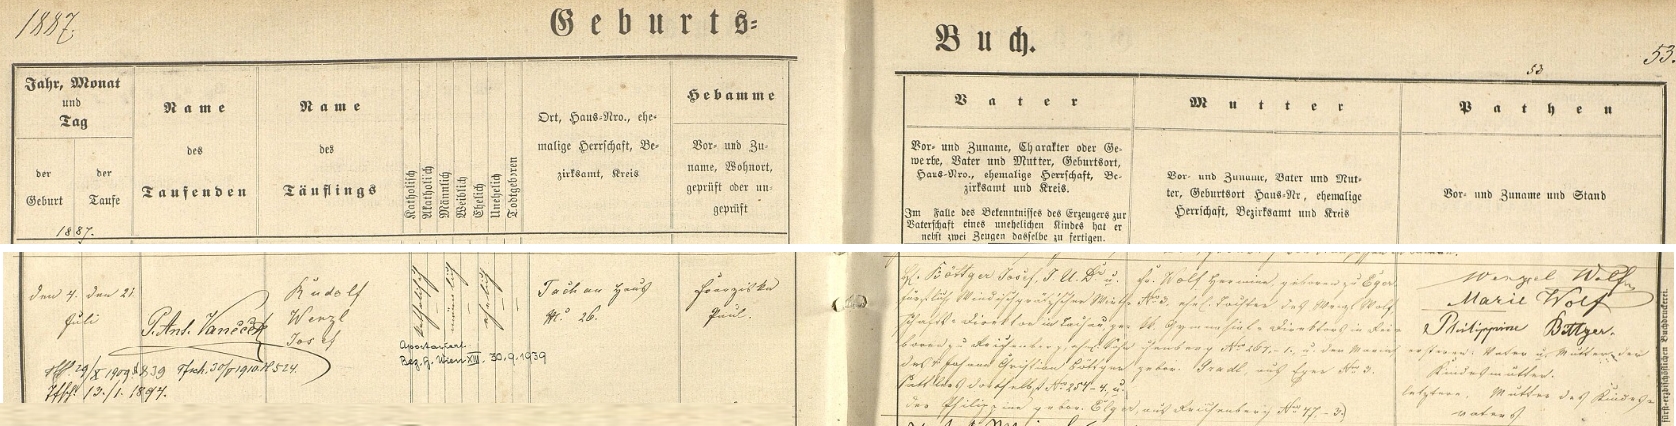 Záznam o jeho narození v tachovské křestní matrice s pozdějším přípisem o "odpadnutí od církve" (v originále "Apostasiert") ve Vídni koncem září roku 1939